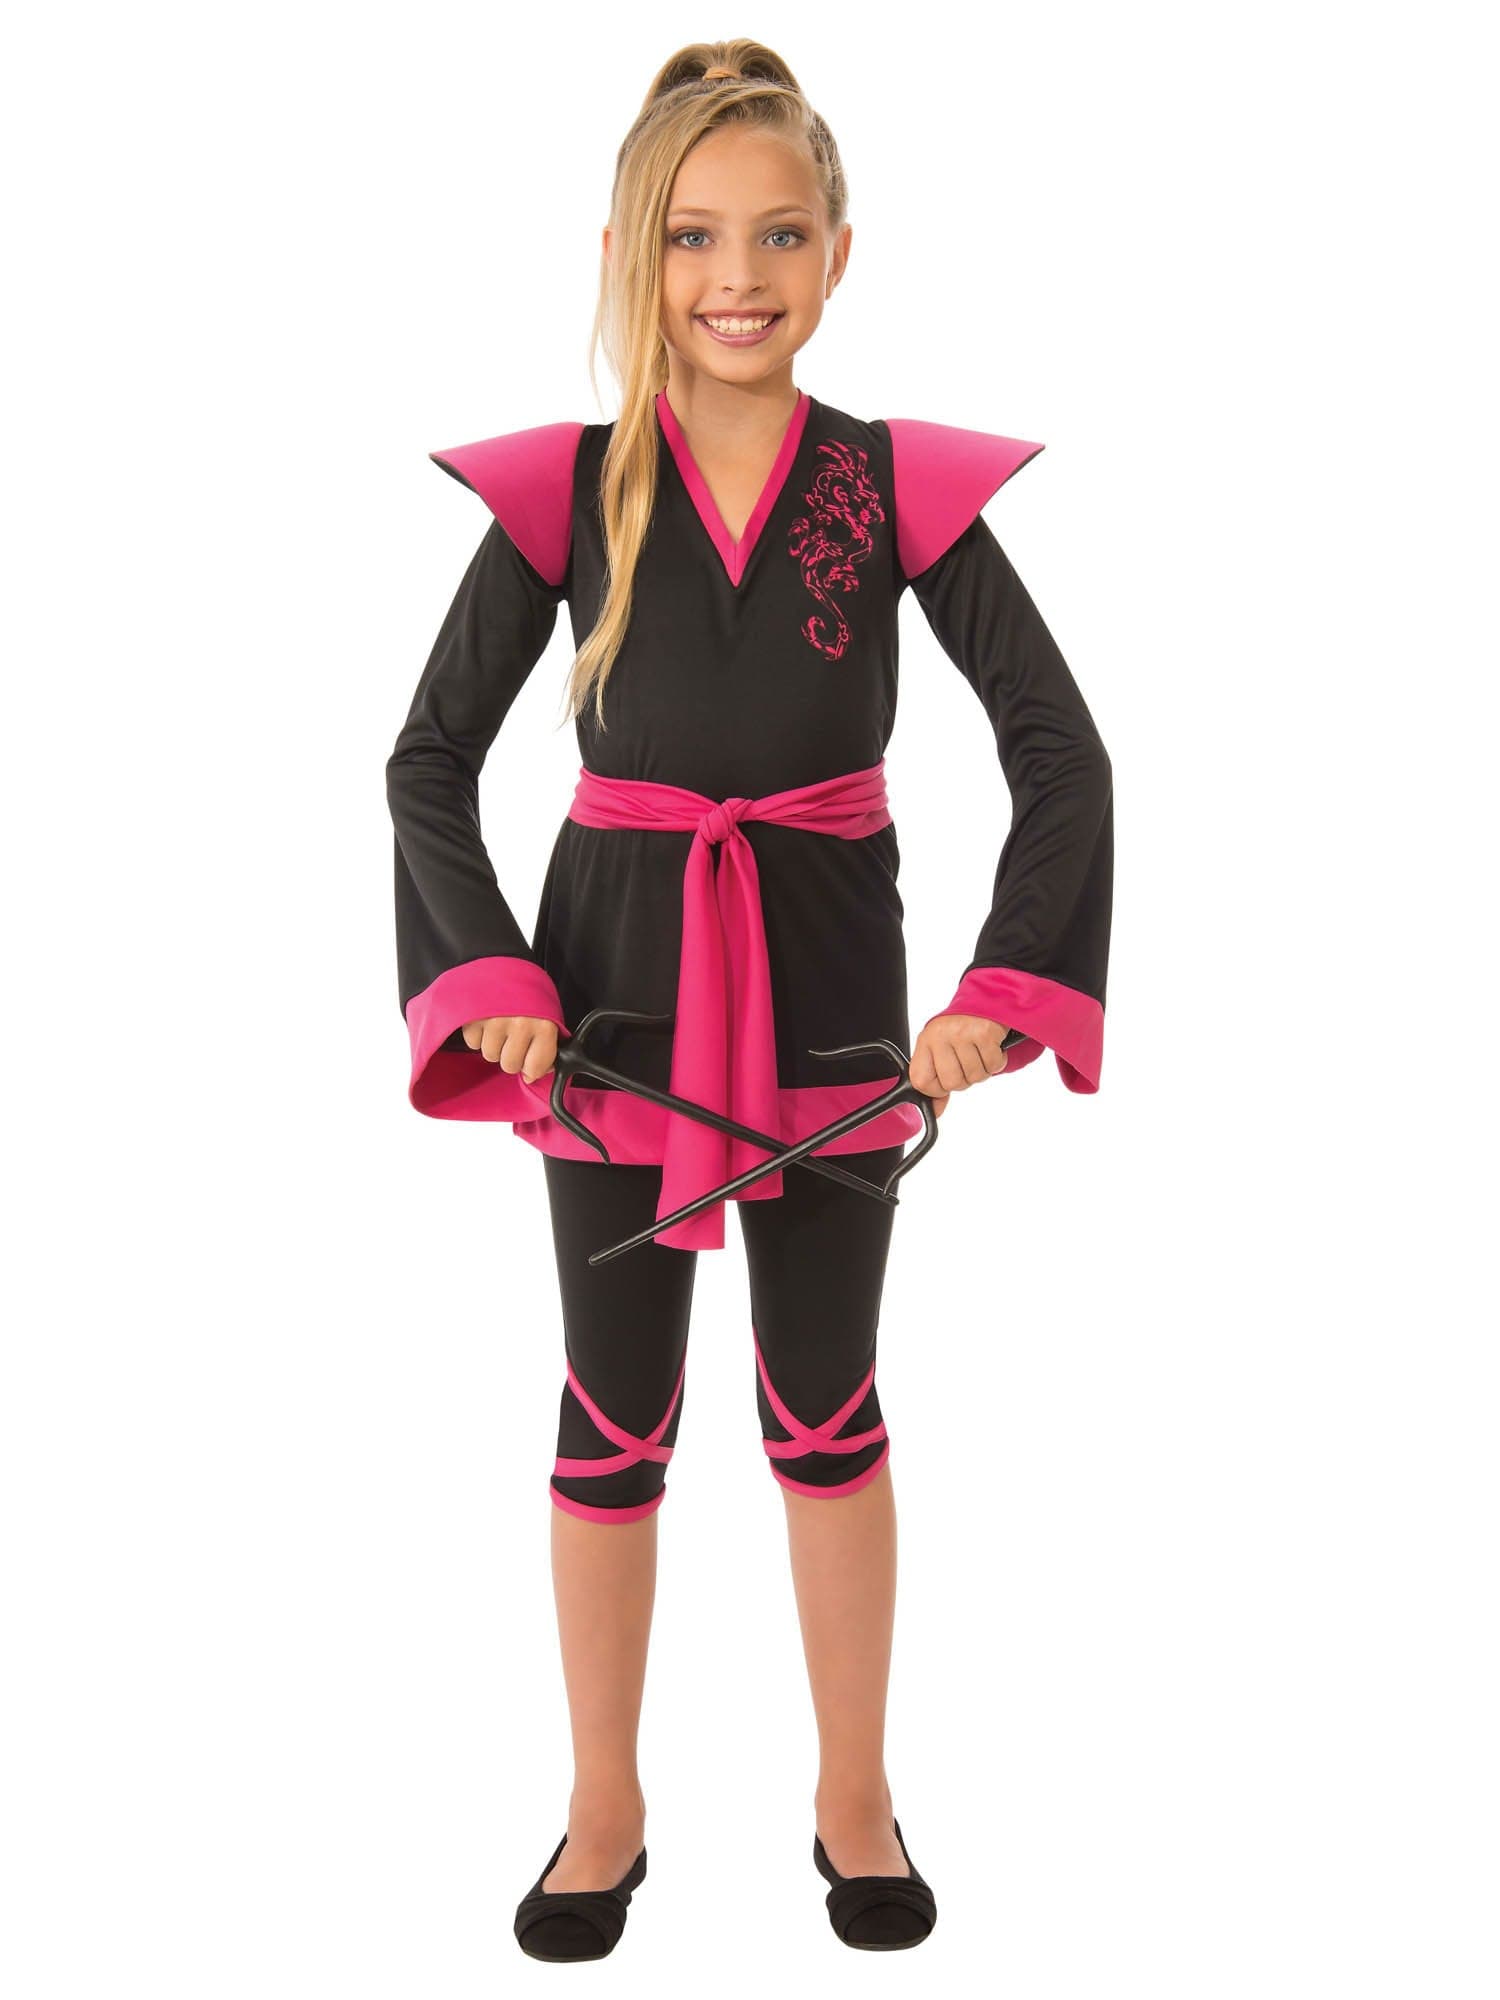 Kids Ninja Girl Costume - costumes.com